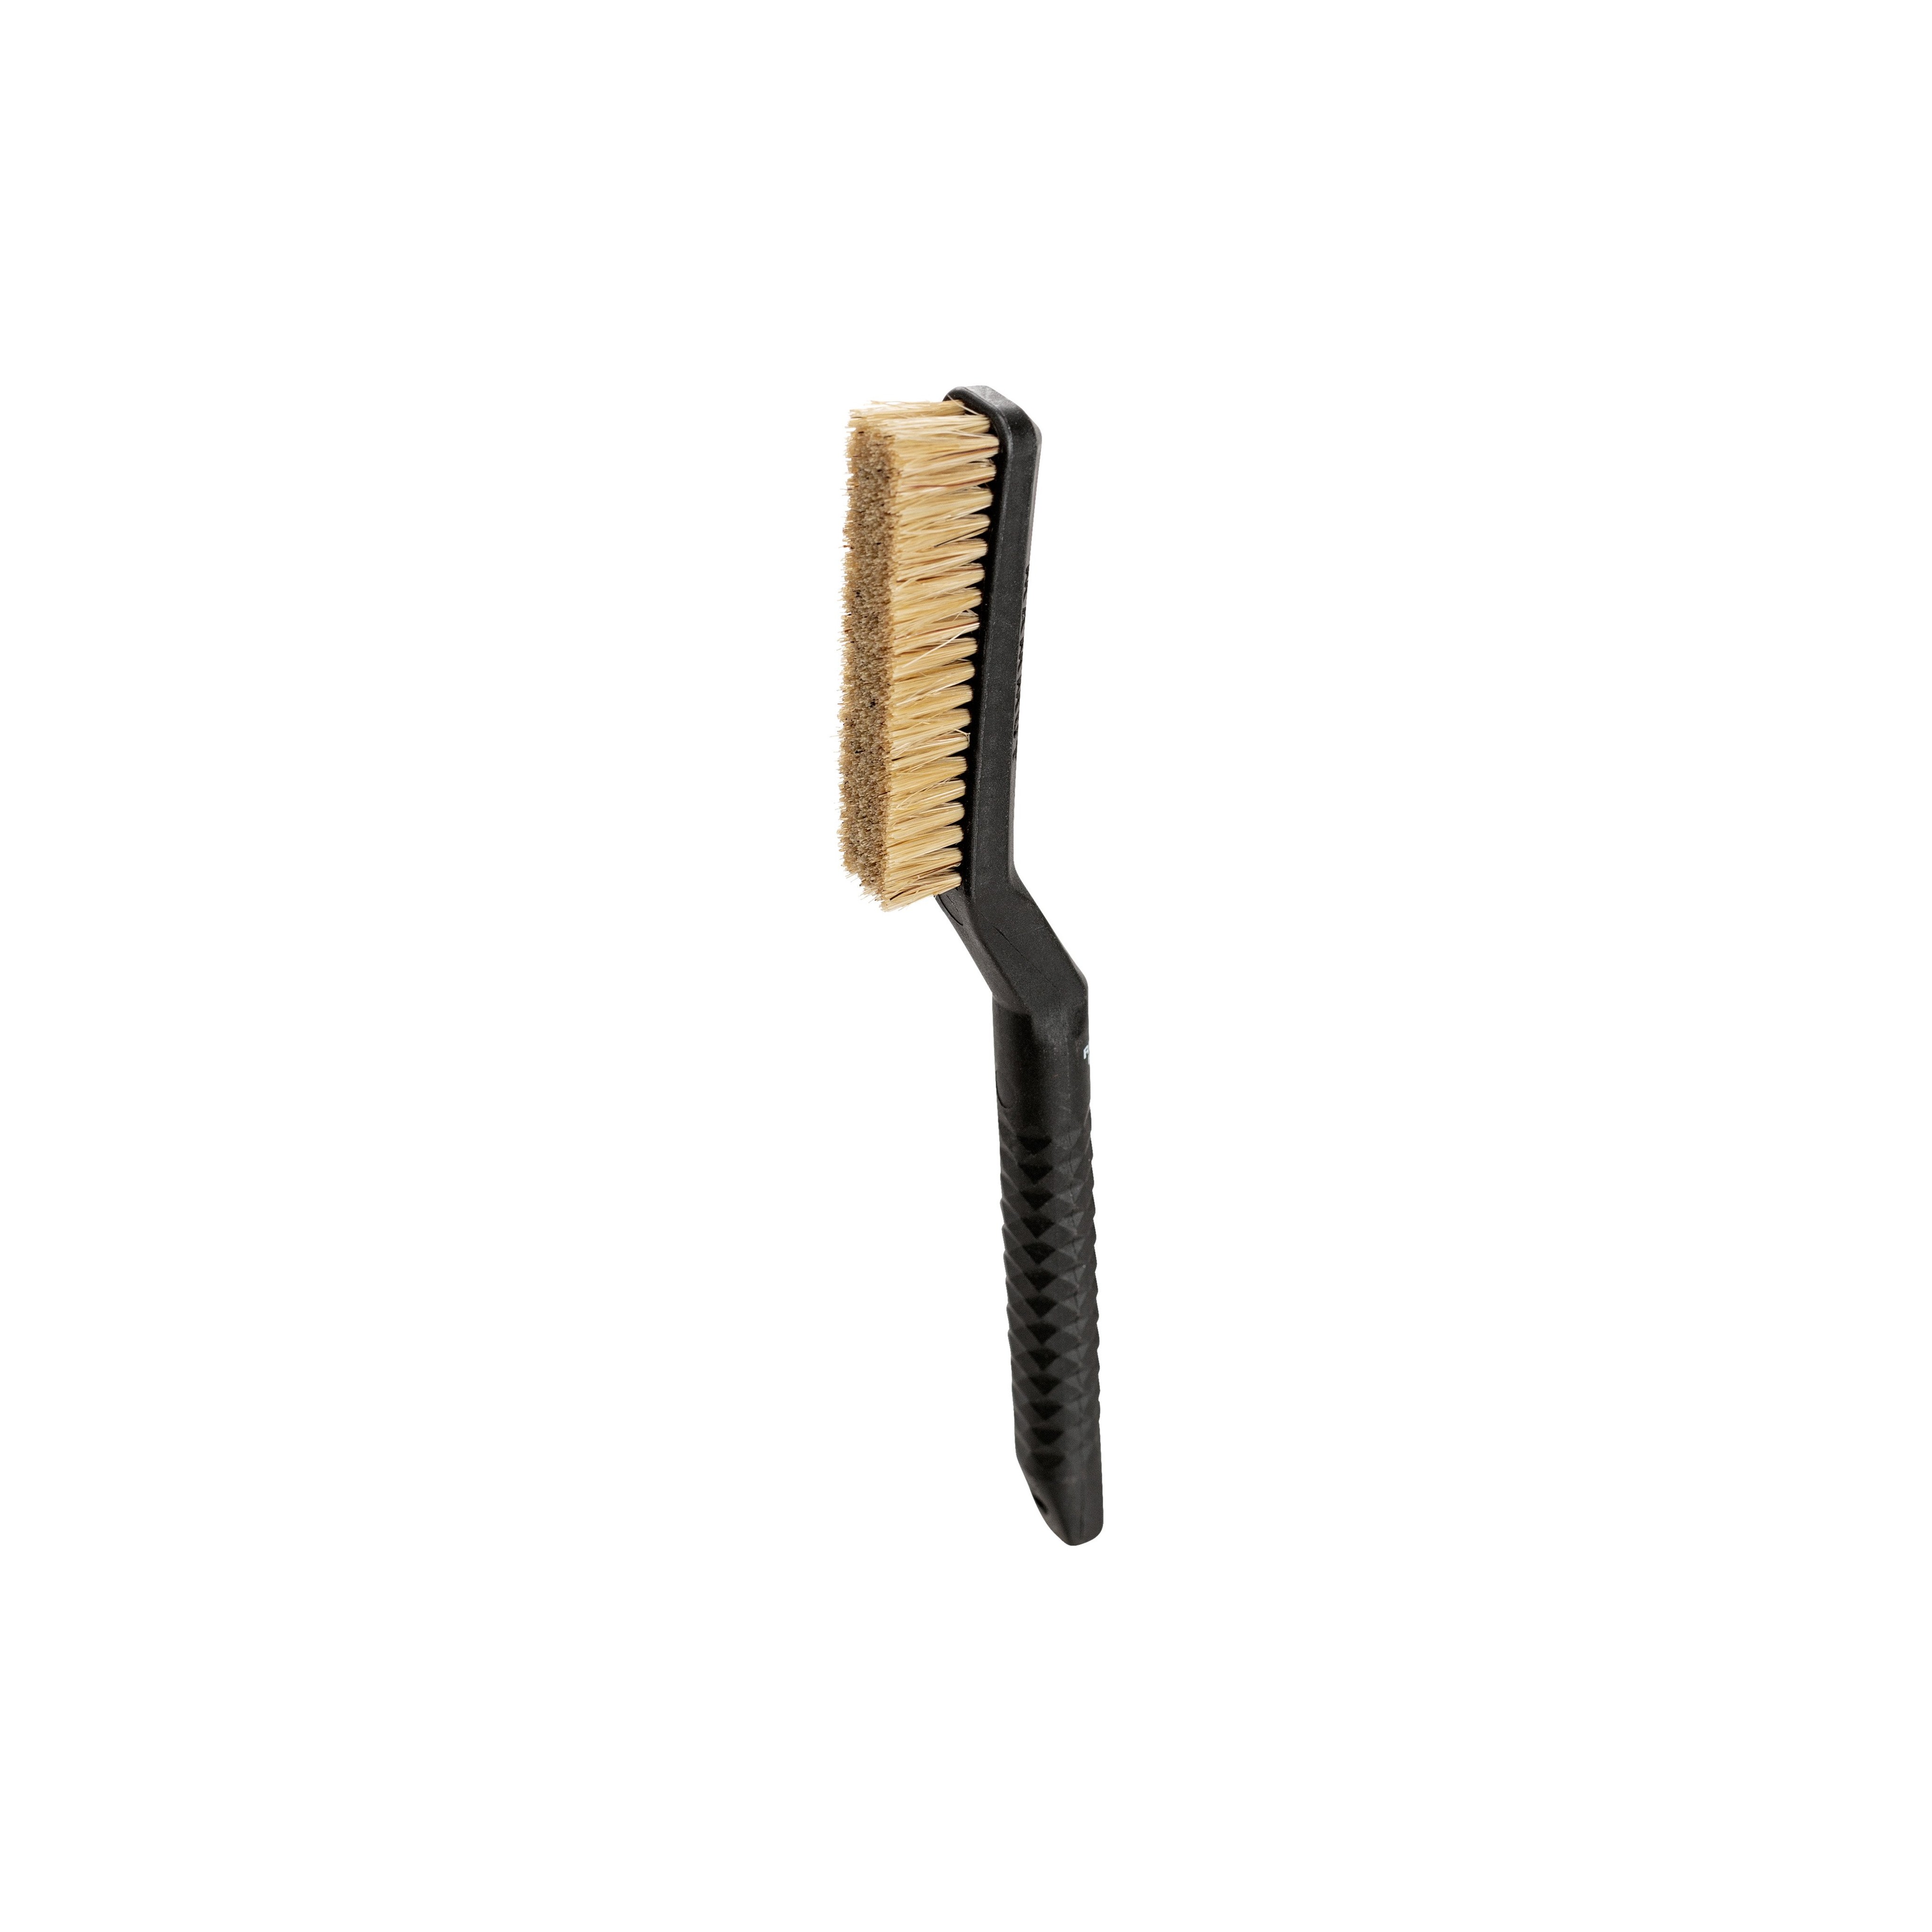 Sender Brush - black, one size product image